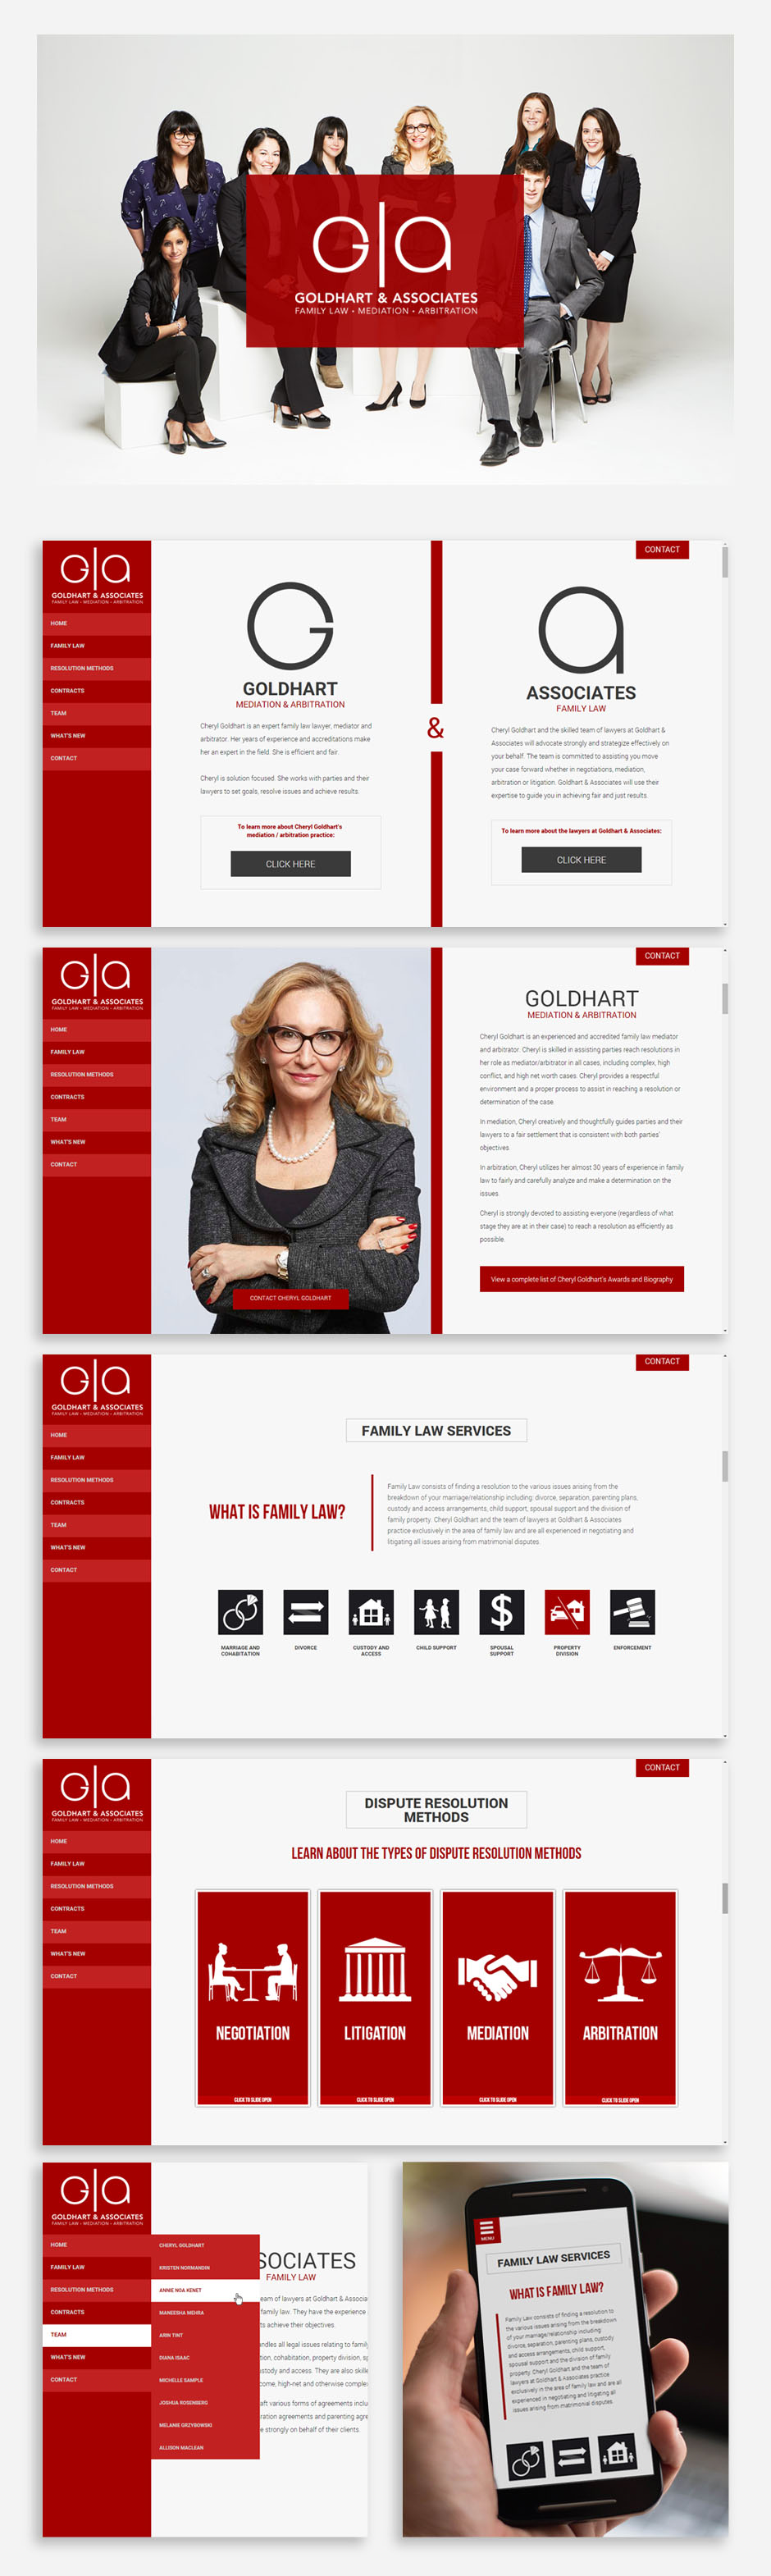 Goldhart & Associates - Website Design and Development